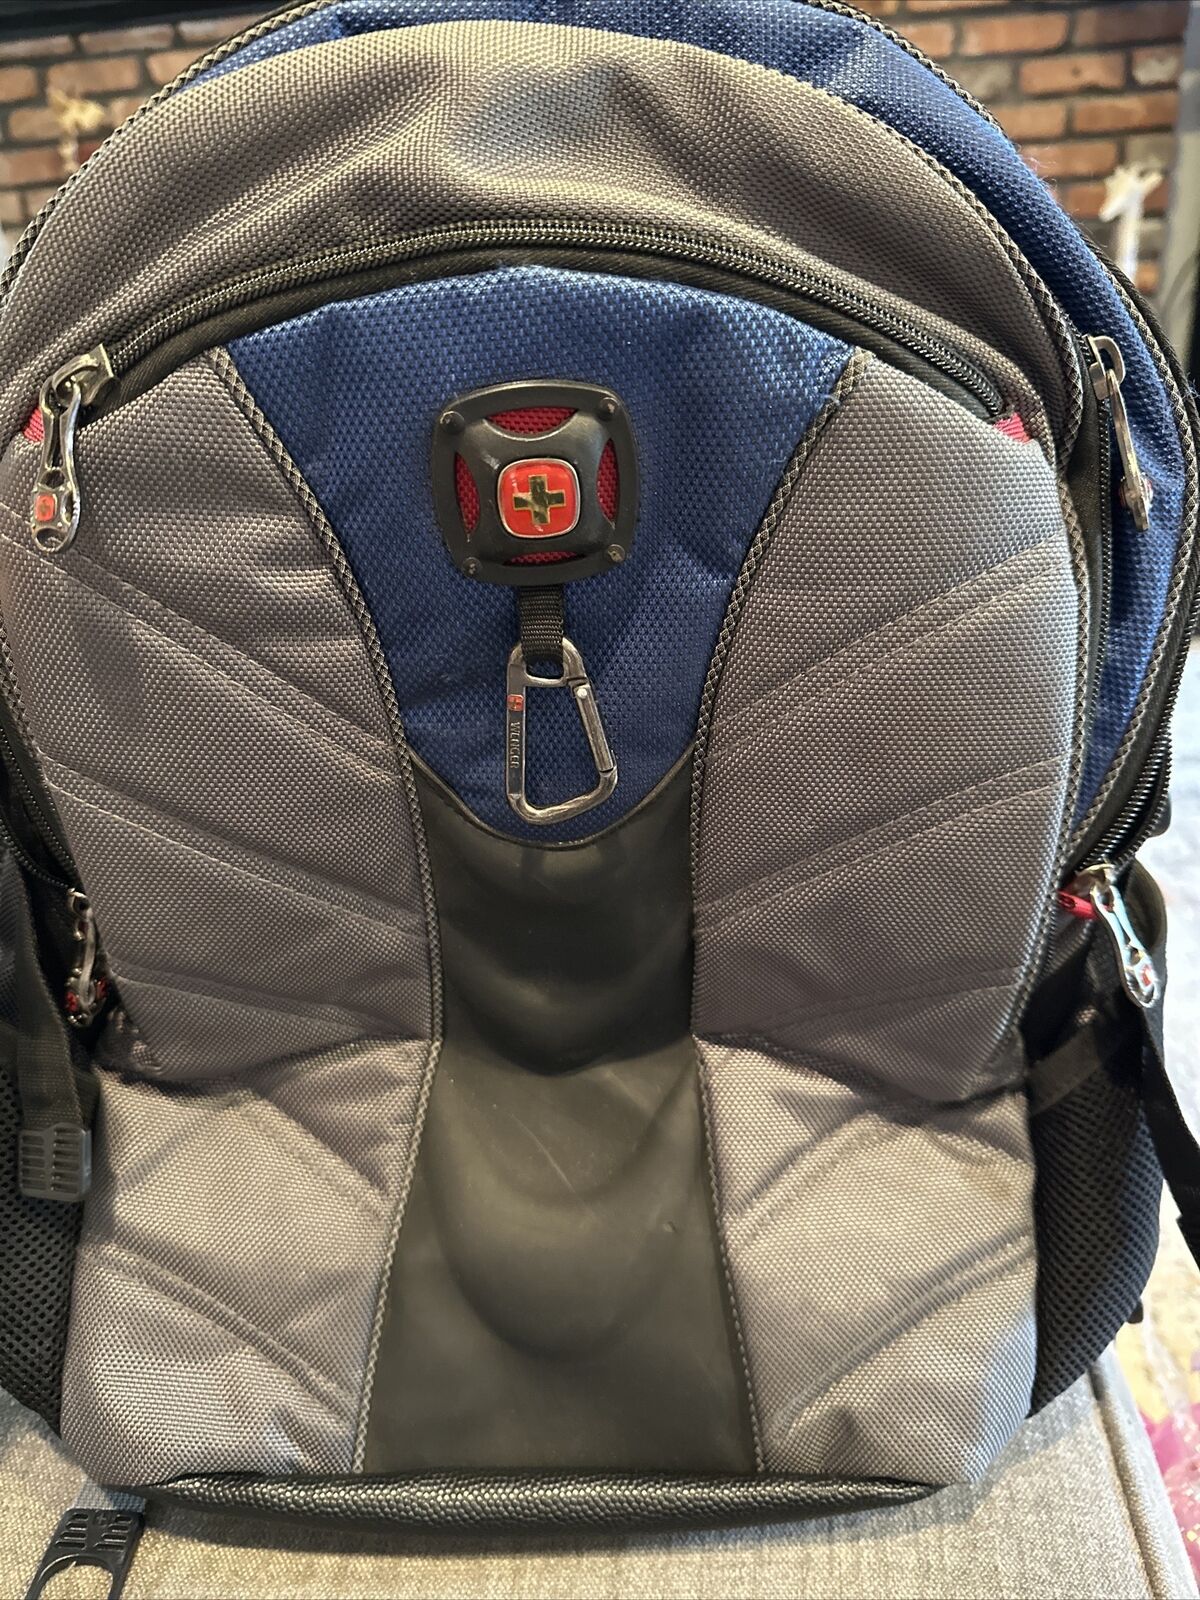 Swiss Gear - Maxxum Computer Backpack Black/gray/Blue